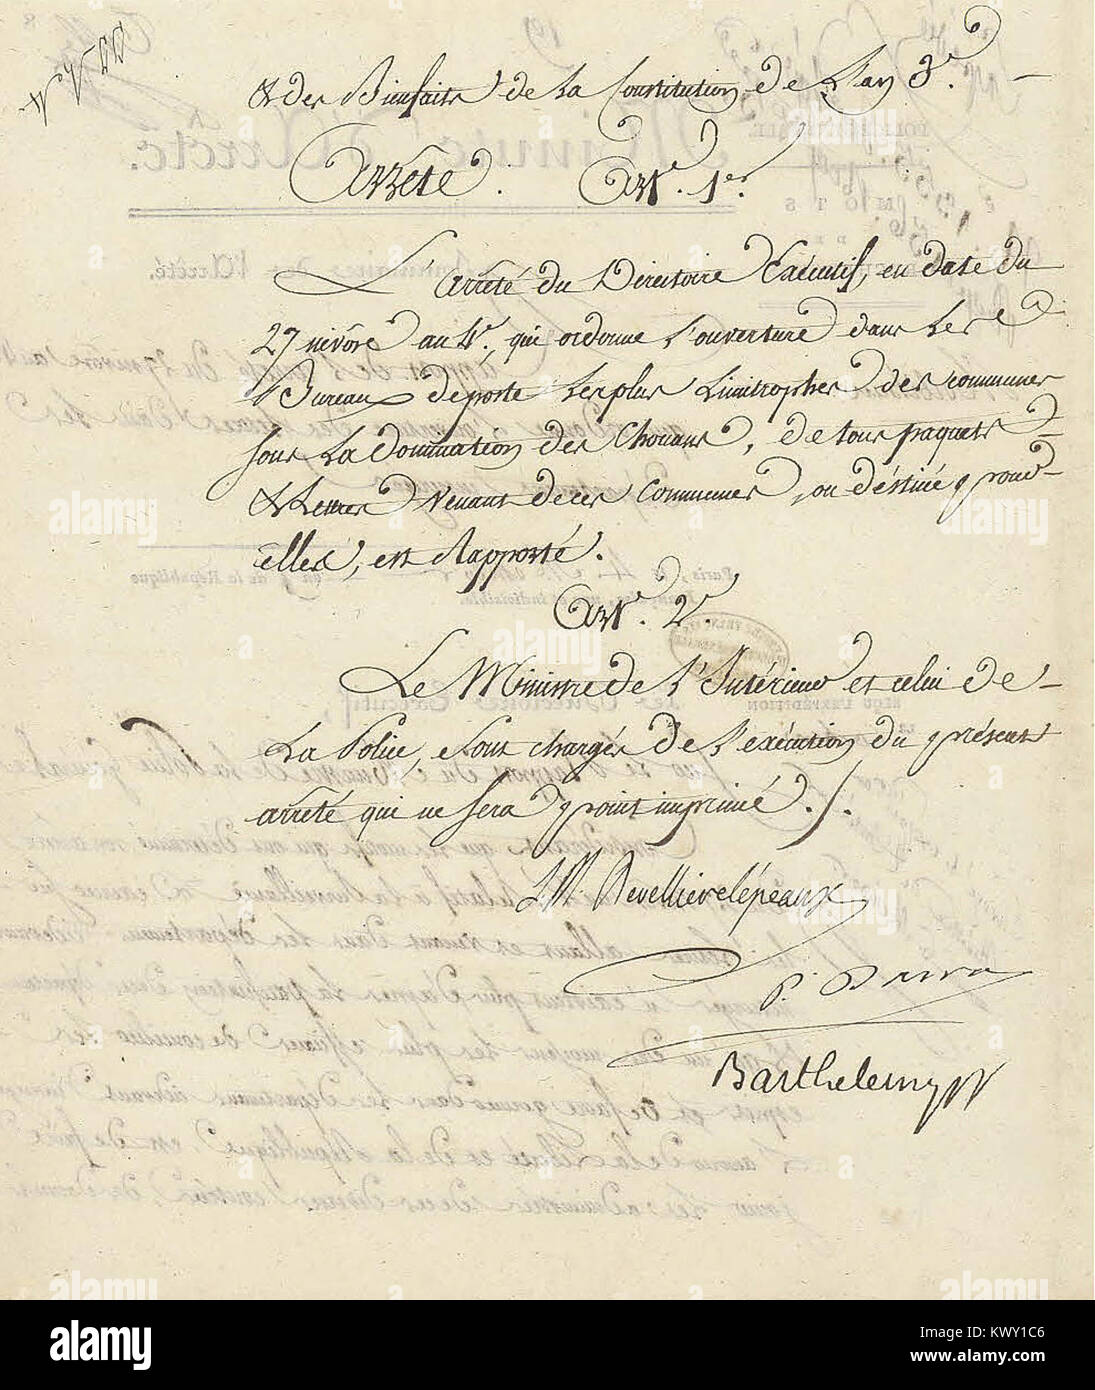 Minute d'arrêté du Directoire exécutif rapportant un Arrêté du 27 nivôse ein IV (17 Januar 1796) - Archives nationales-AF-III-454 - (2) Stockfoto